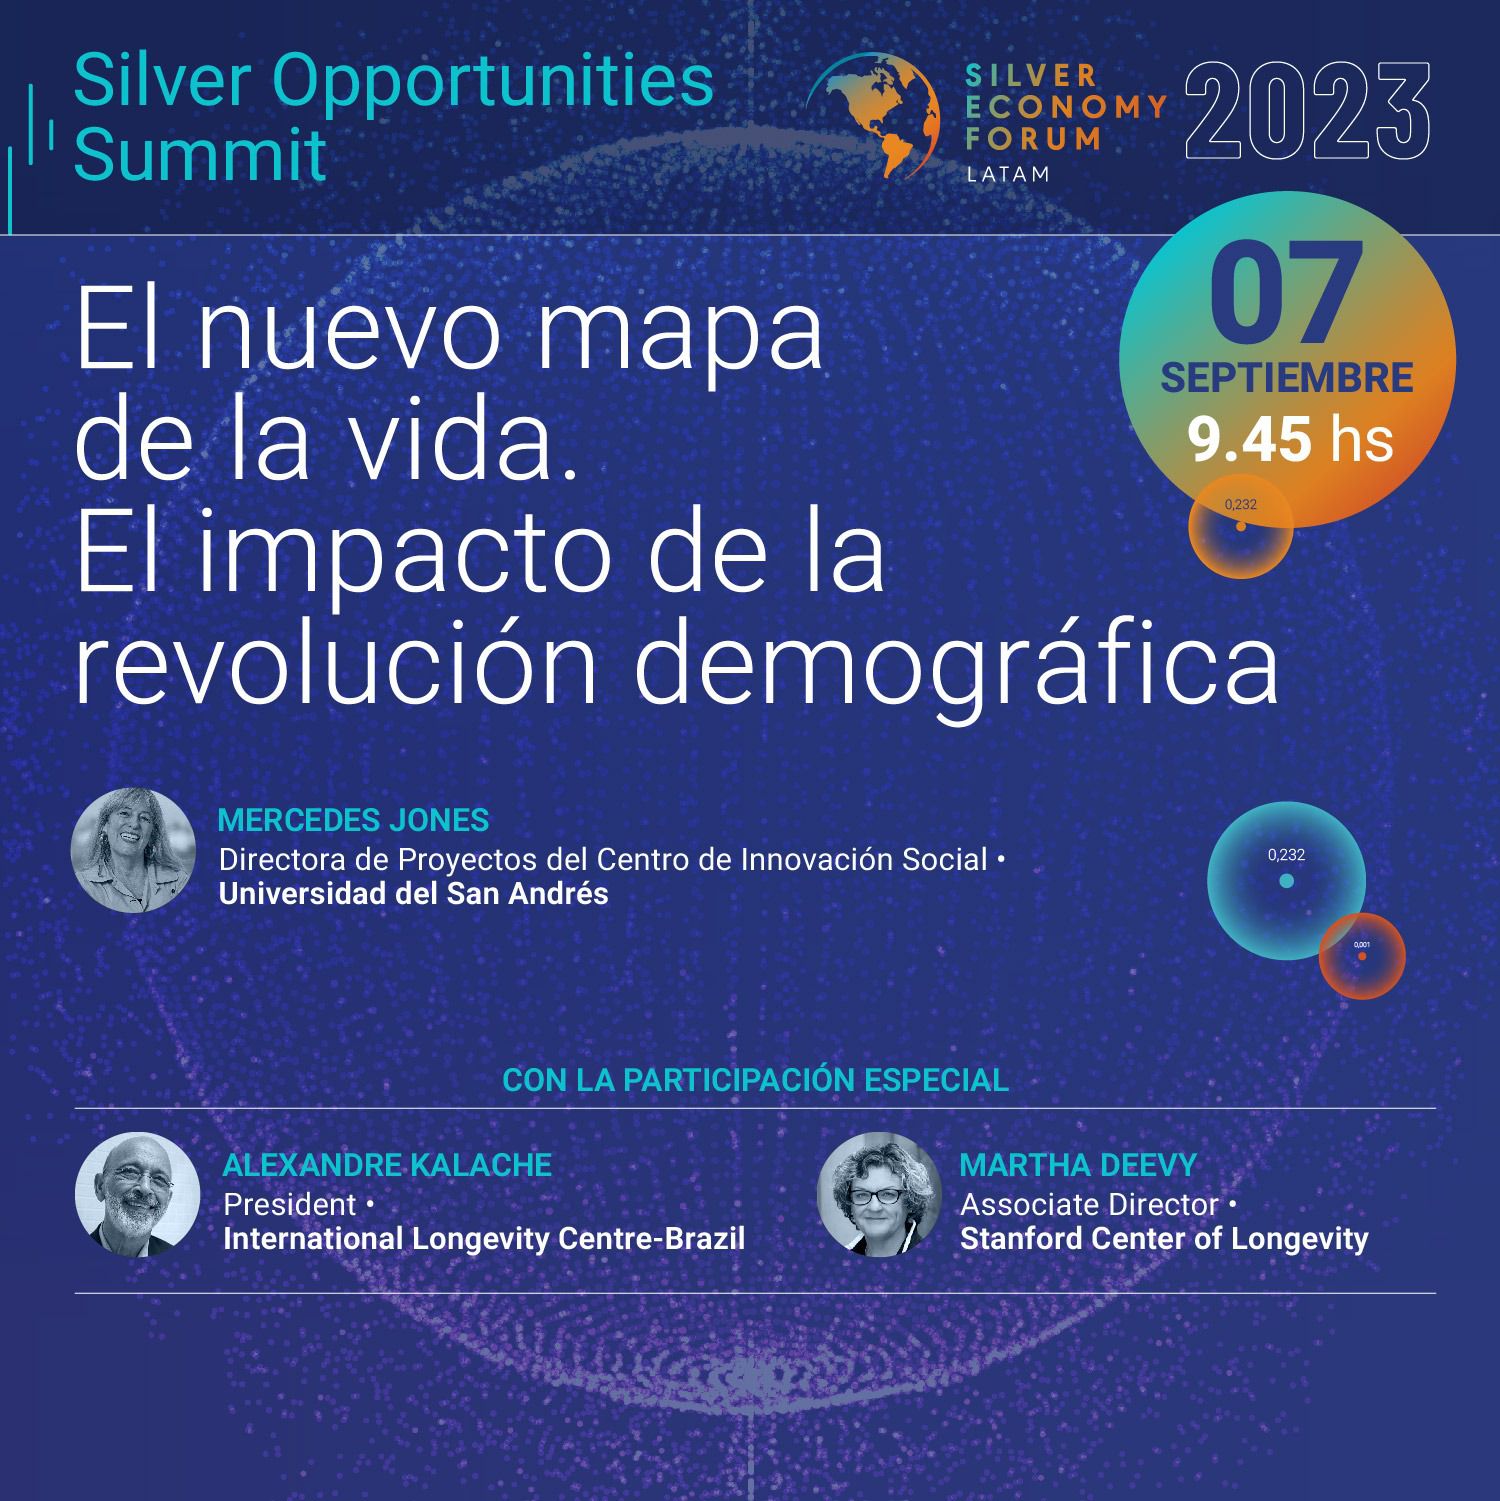 Silver Economy economía silver longevidad summit